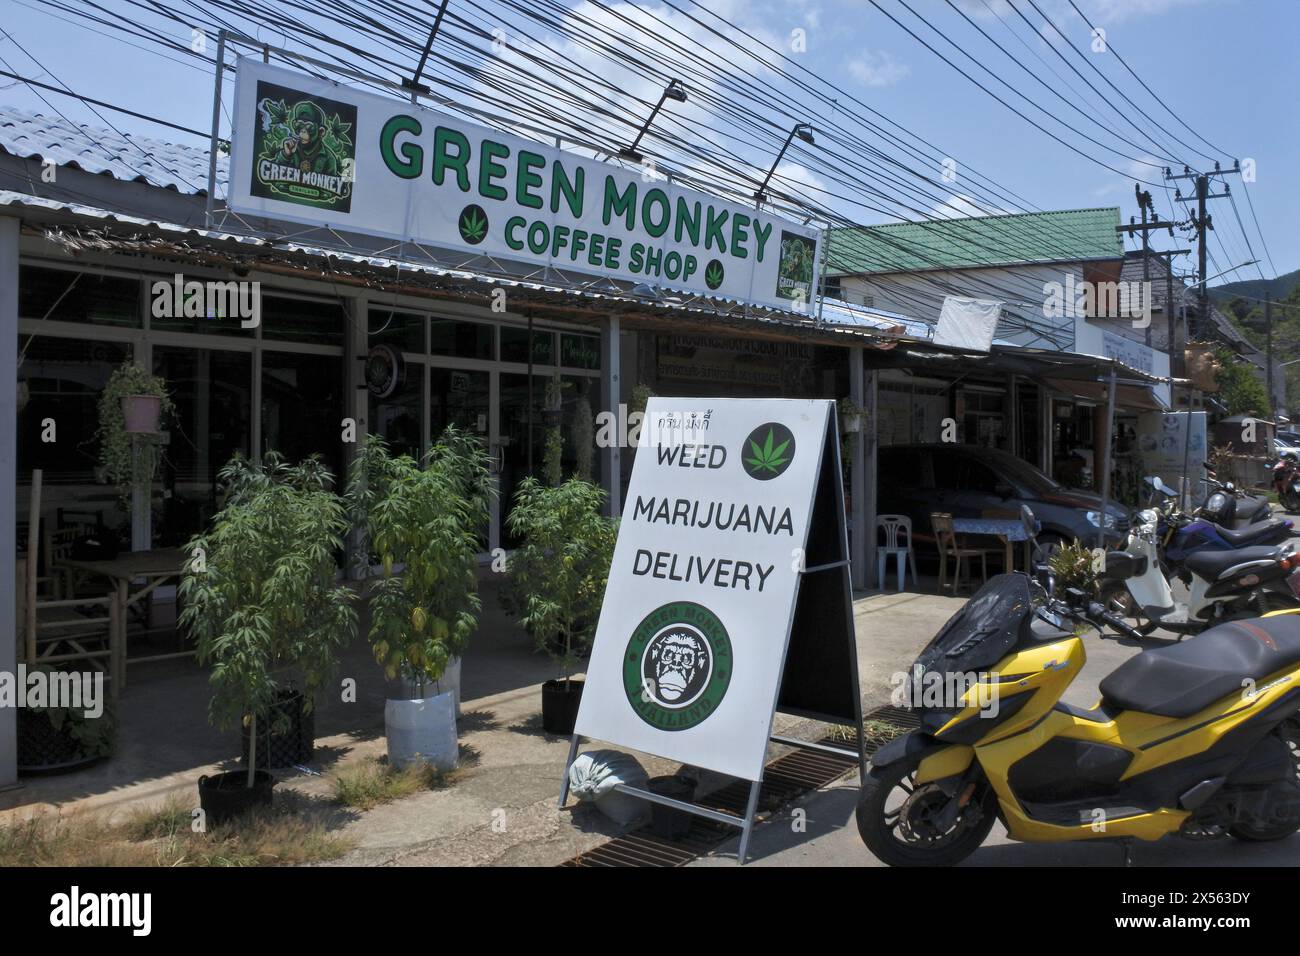 Una vista generale dell'outlet di marijuana Green Monkey che offre servizio di consegna a domicilio. Sull'isola di Koh Chang in Thailandia sono stati aperti diversi punti vendita di cannabis da quando il Regno di Thailandia ha decriminalizzato la marijuana per uso medico e personale, il 9 giugno 2022 la marihuana è stata rimossa dalla categoria dei narcotici rendendo legale la vendita e l'acquisto dell'erba. Foto Stock